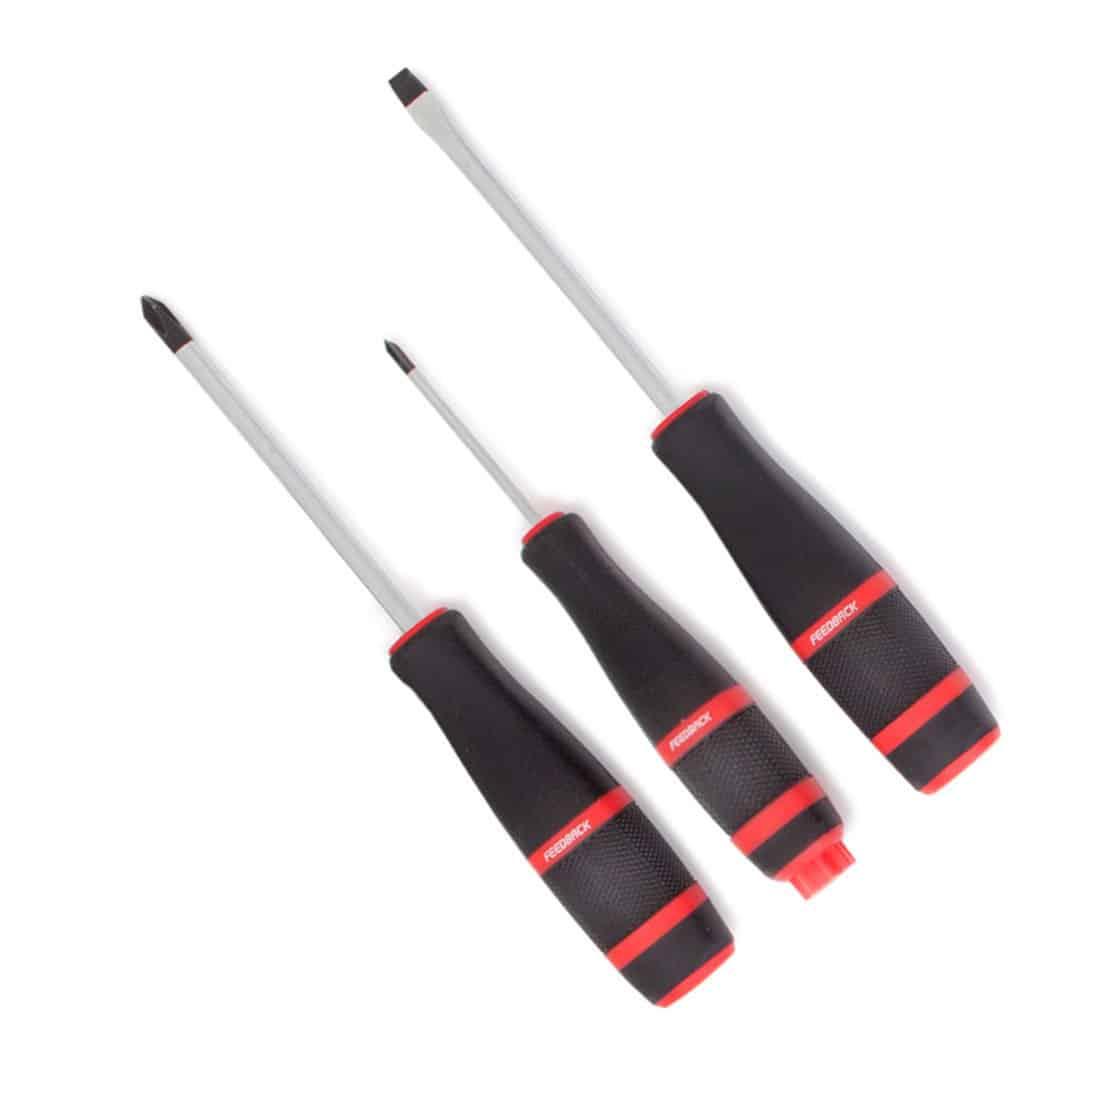 feedback sports screwdriver kit - 3 screwdrivers